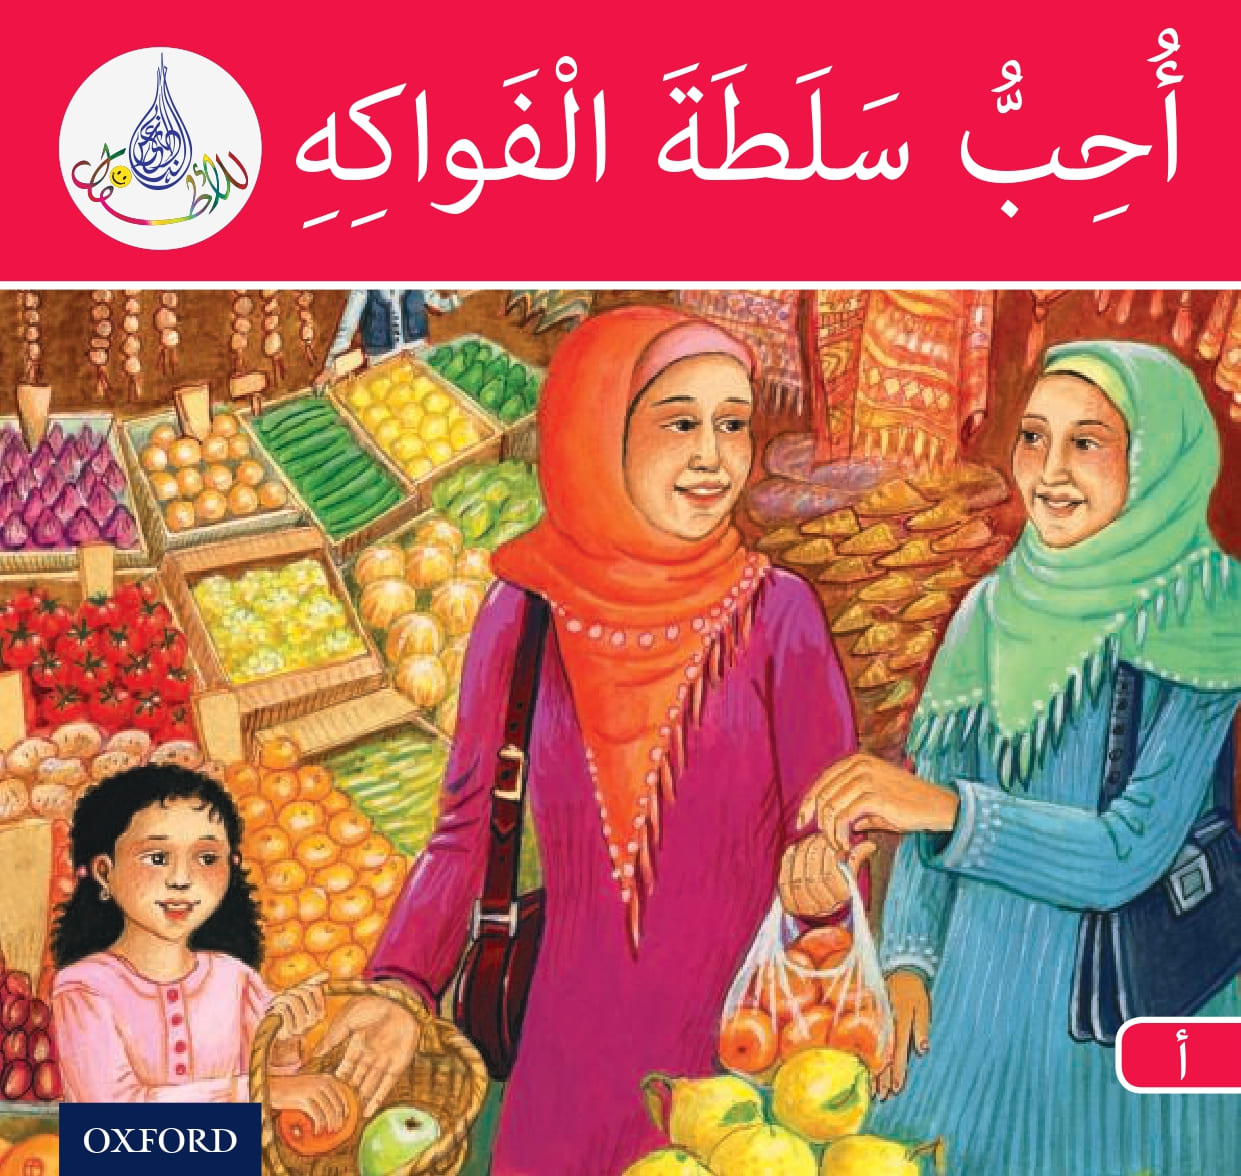 احب سلطة الفواكه لتعليم الاطفال اسماء الفواكه باللغة العربية